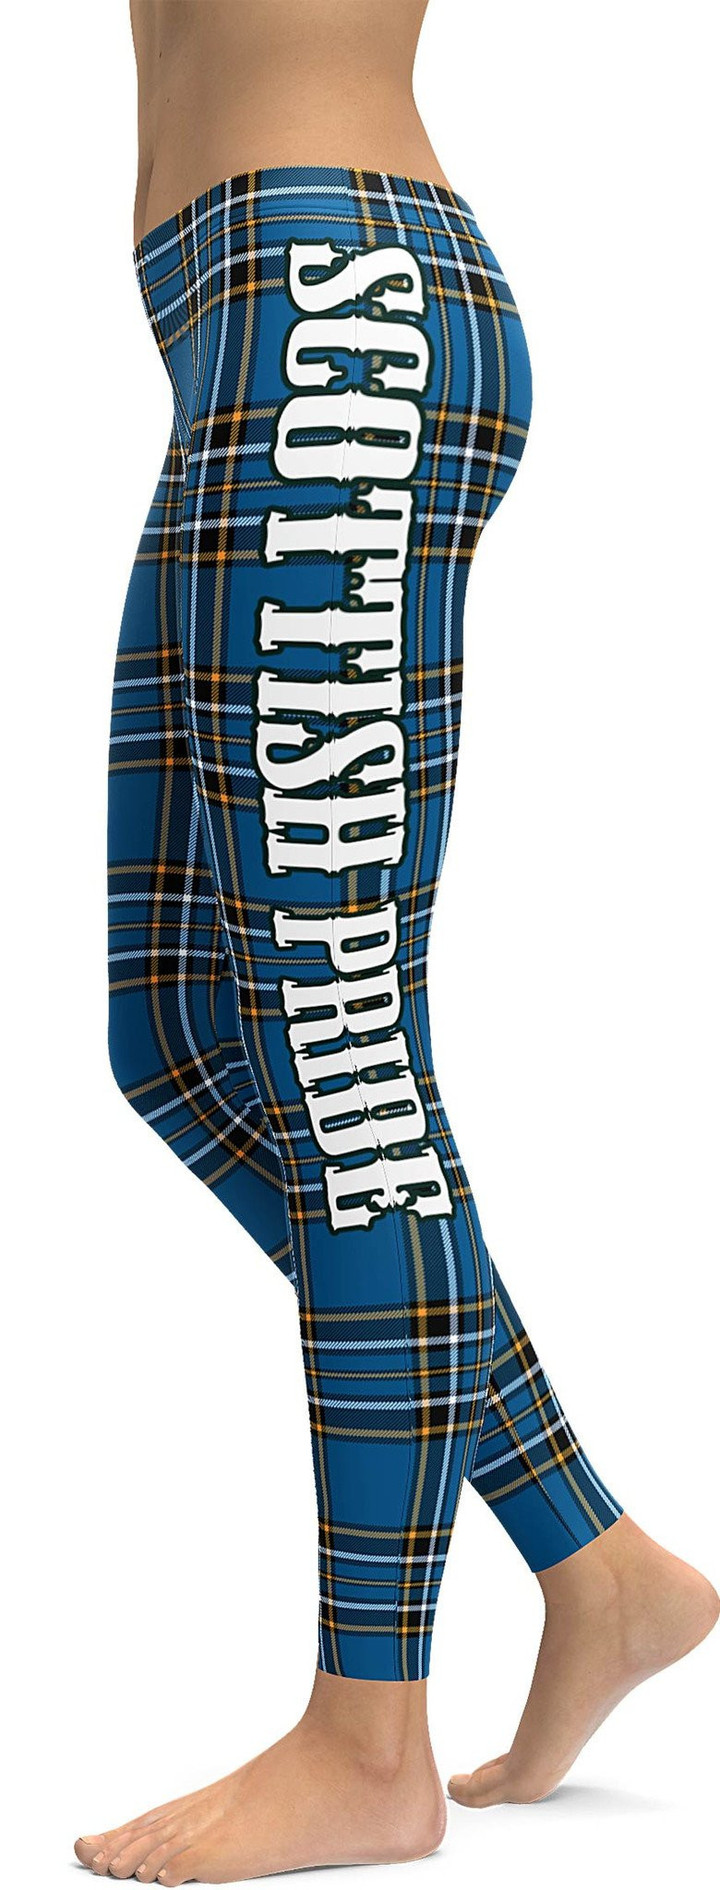 Scottish Pride - Kilt Inspired High-Waisted Leggings